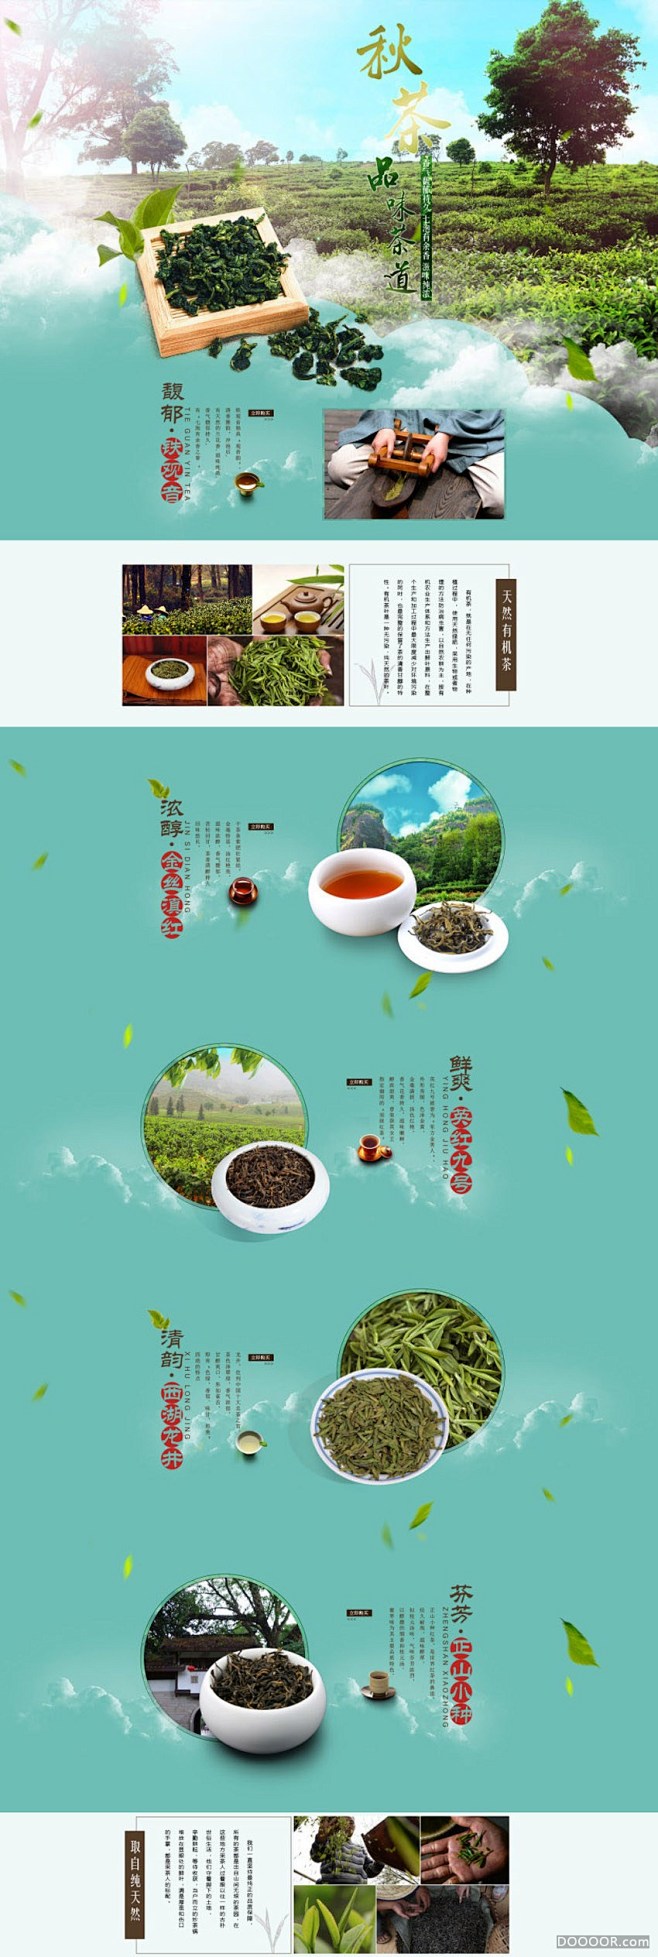 品牌茶叶网店首页设计.jpg